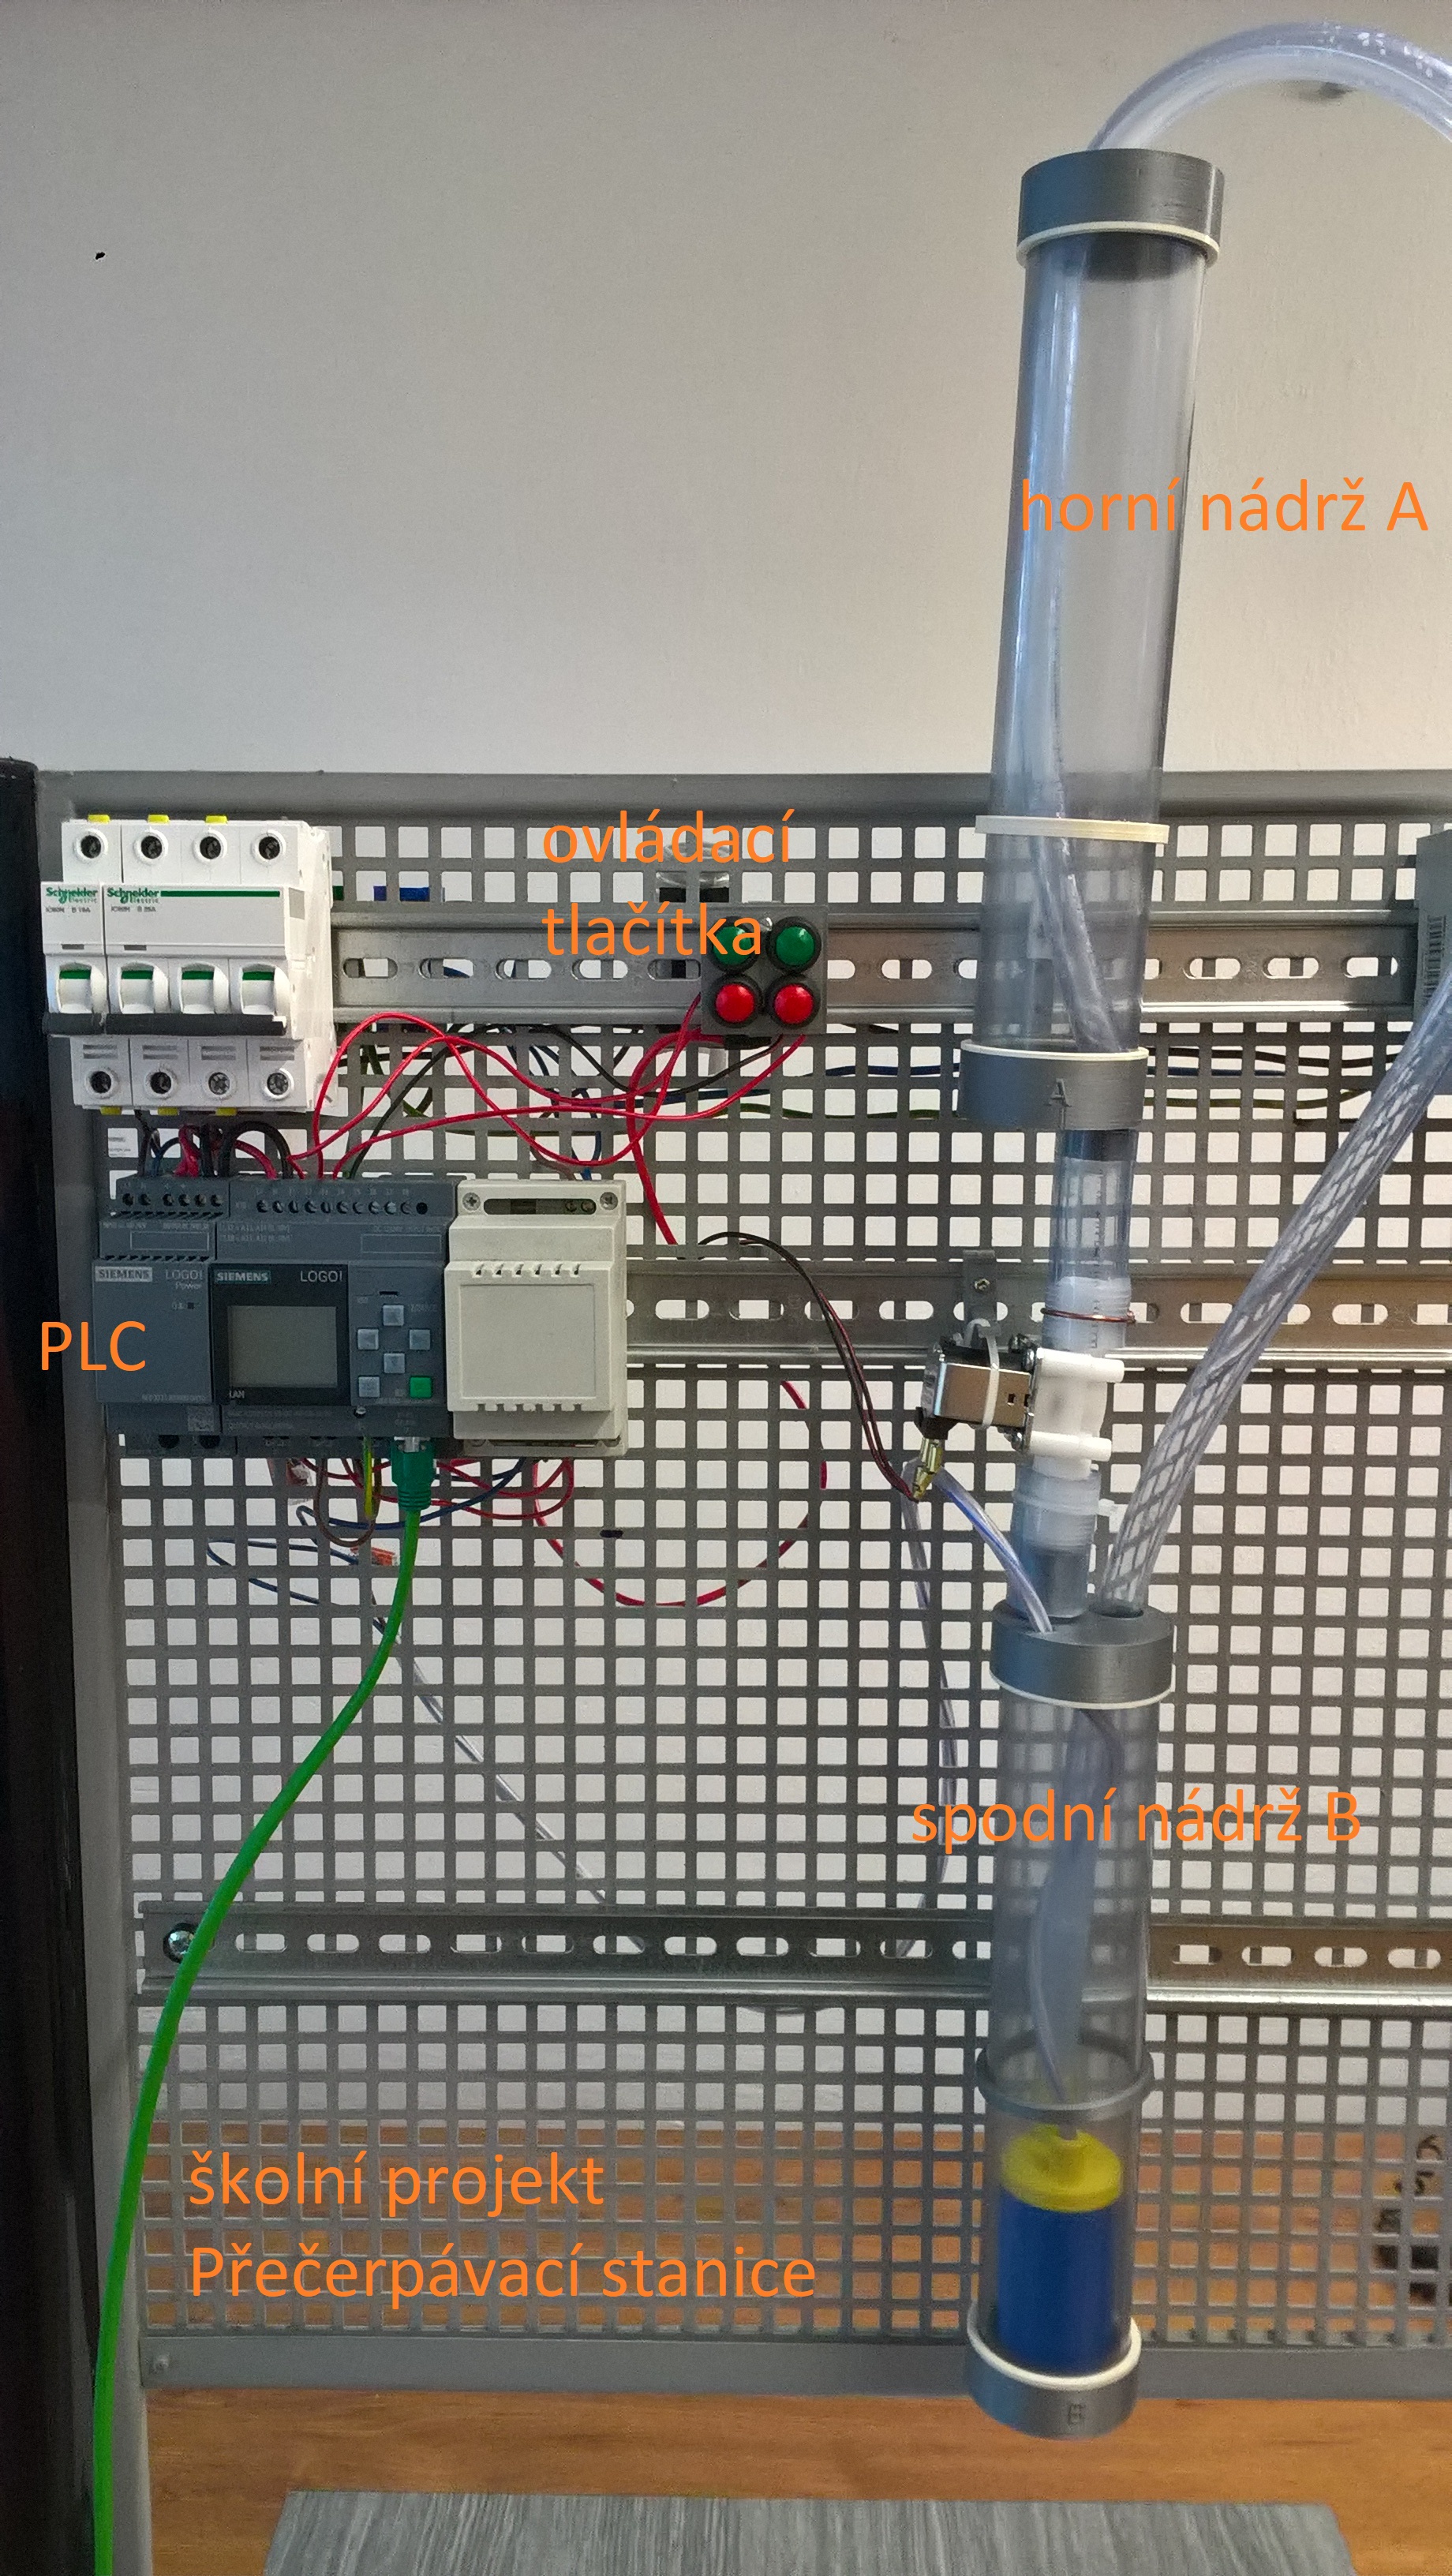 Přečerpávací stanice – model technologického procesu řízený PLC automatem